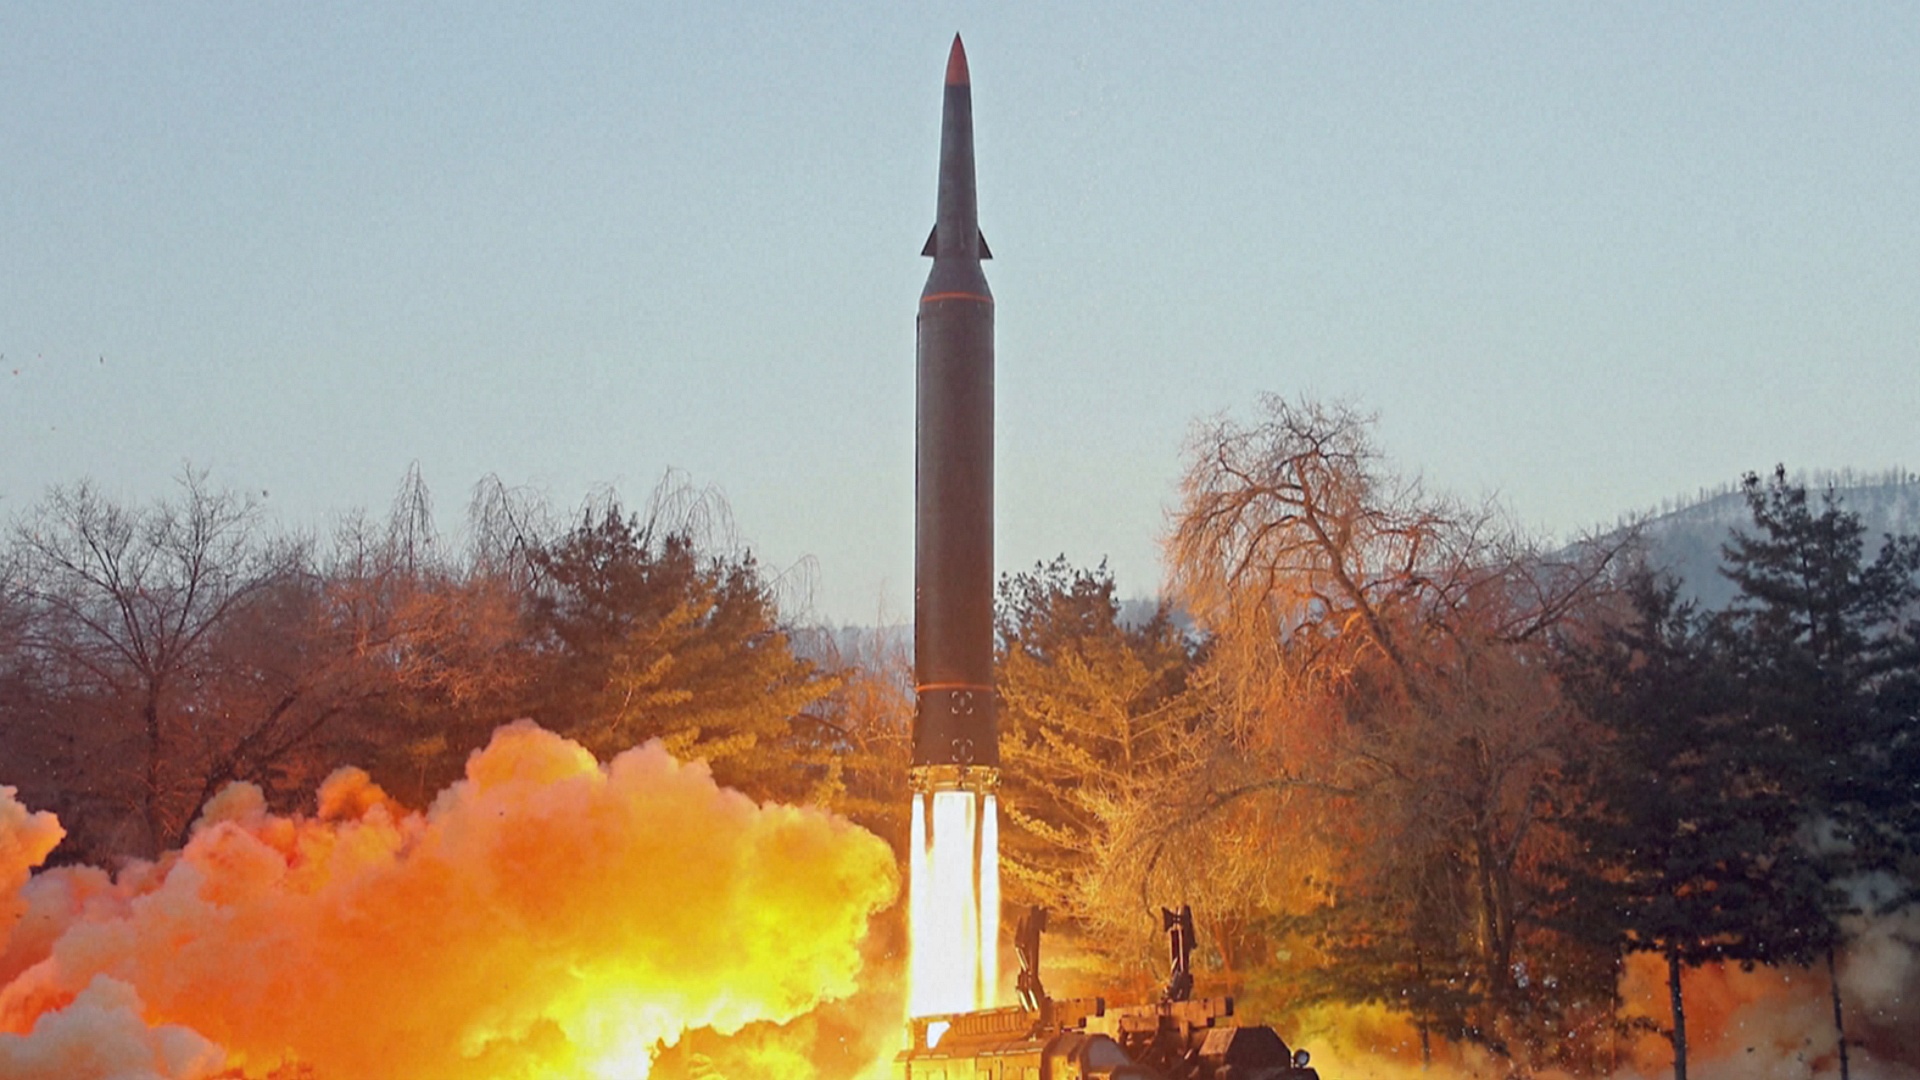 Северная Корея произвела запуск неопознанной ракеты